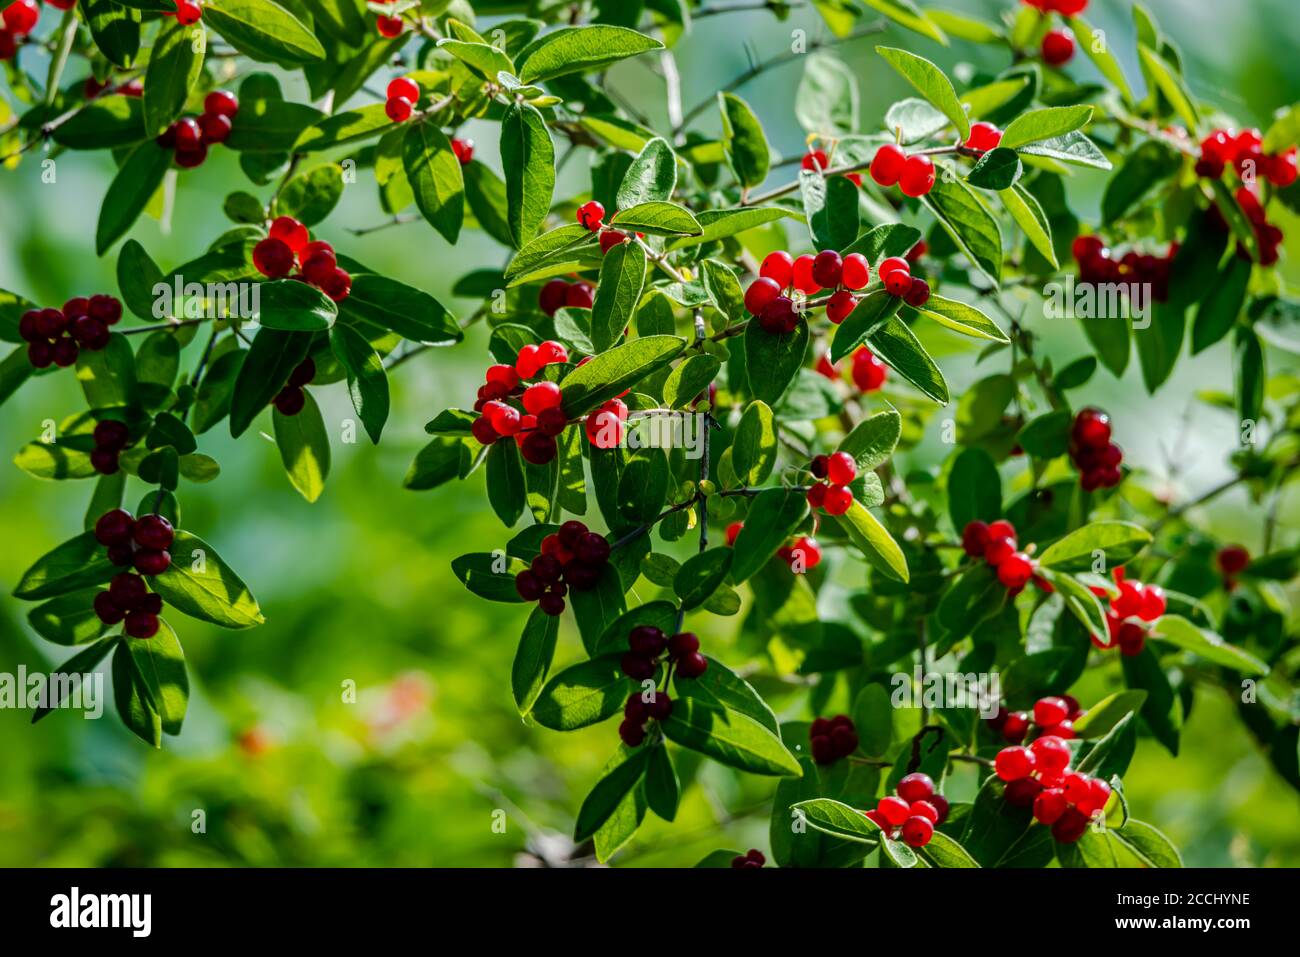 Tatarian Honeysuckle shrub with red berries Stock Photo